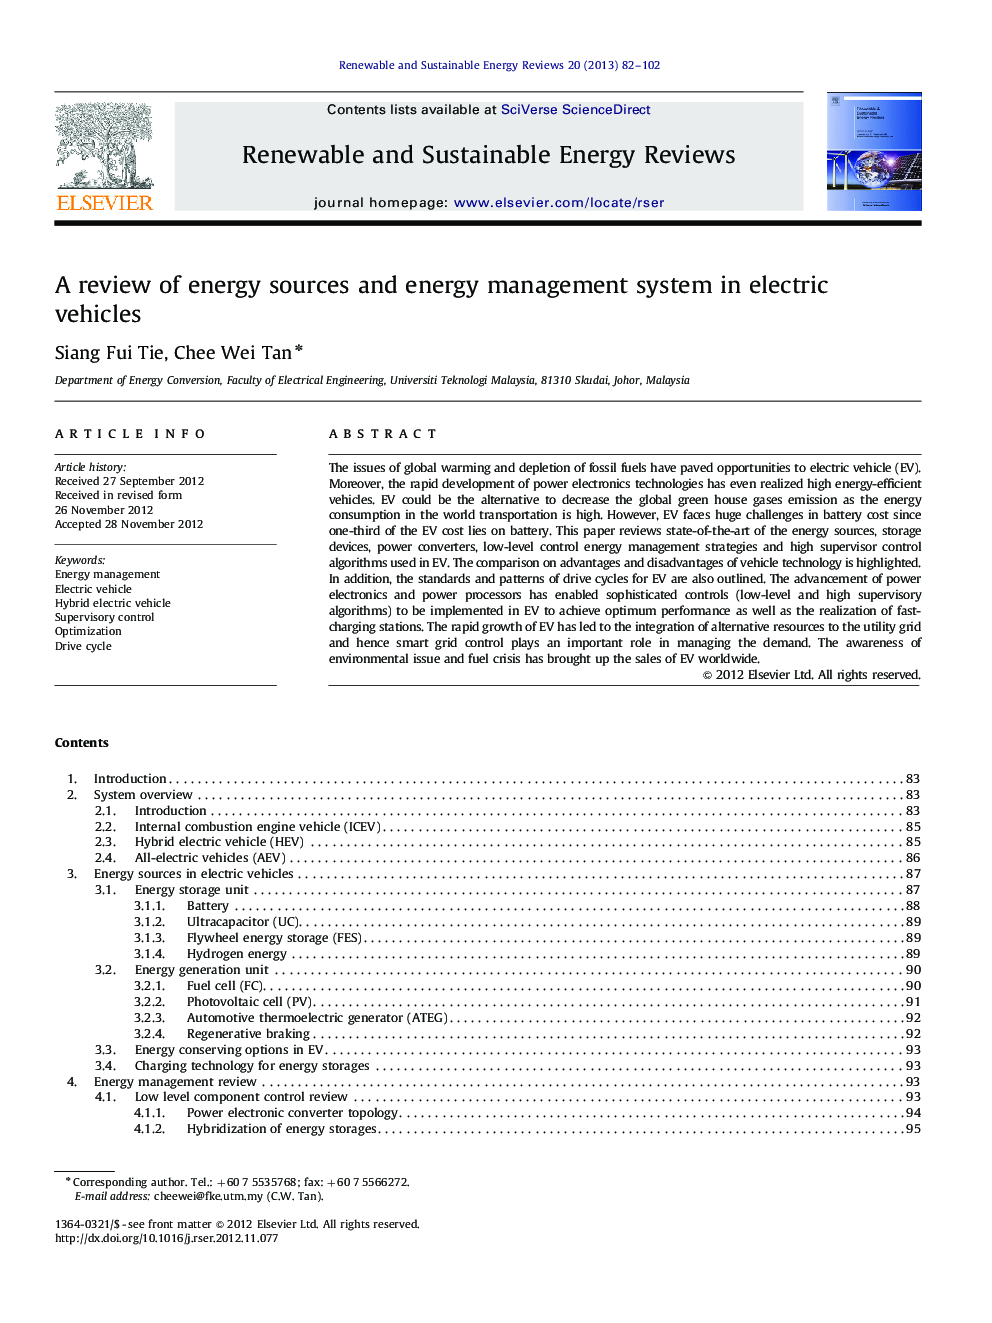 بررسی منابع انرژی و سیستم مدیریت انرژی در خودروهای الکتریکی 